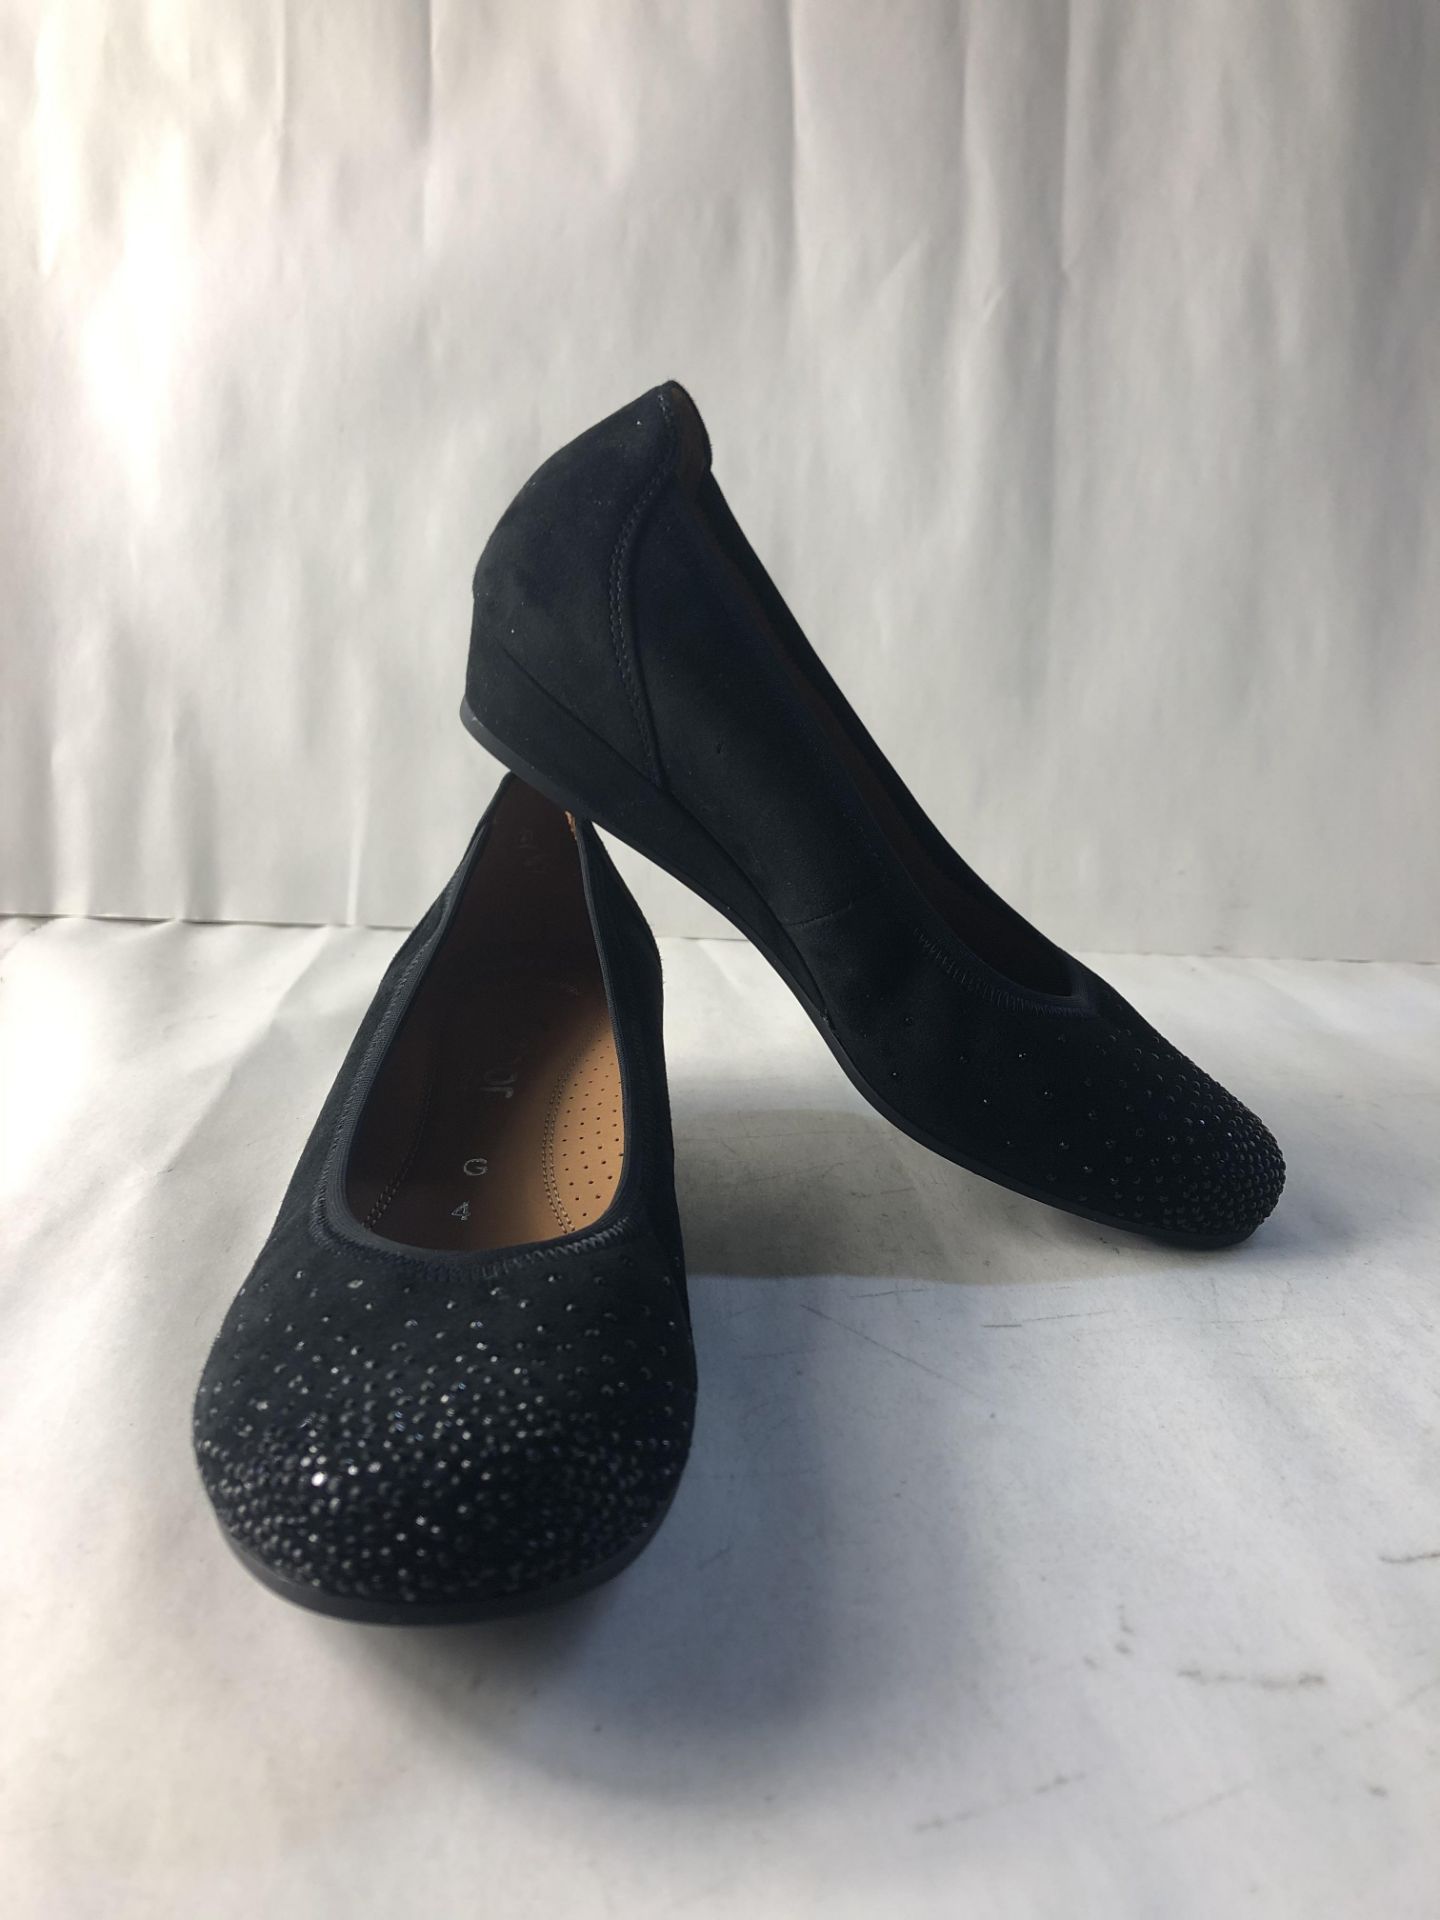 Gabor Shoes Women's Comfort Sport Ballet Flats, Black (Schwarz 47), 4.5 UK 4 UK Women’s 92.694_47 |4 - Image 3 of 3